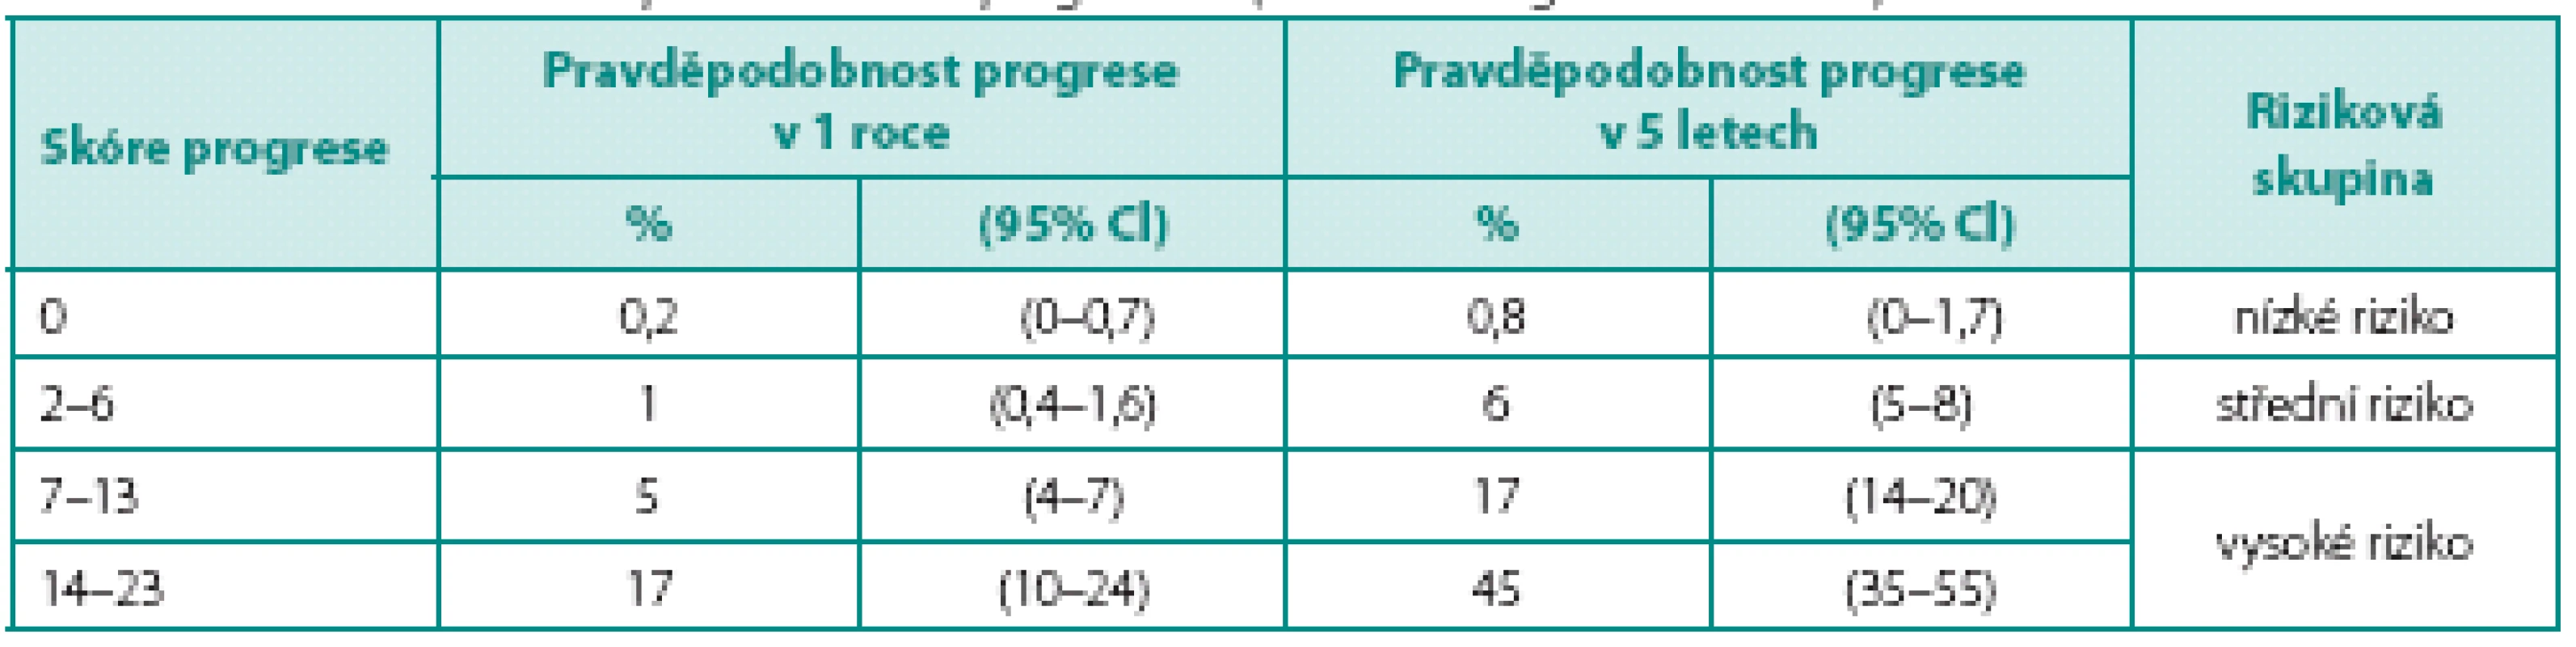 Skóre a pravděpodobnosti výskytu progrese (zdroj: EAU doporučení 2012)
Table 3. The risk scores and probabilities of progression (source: EAU guidelines 2012)